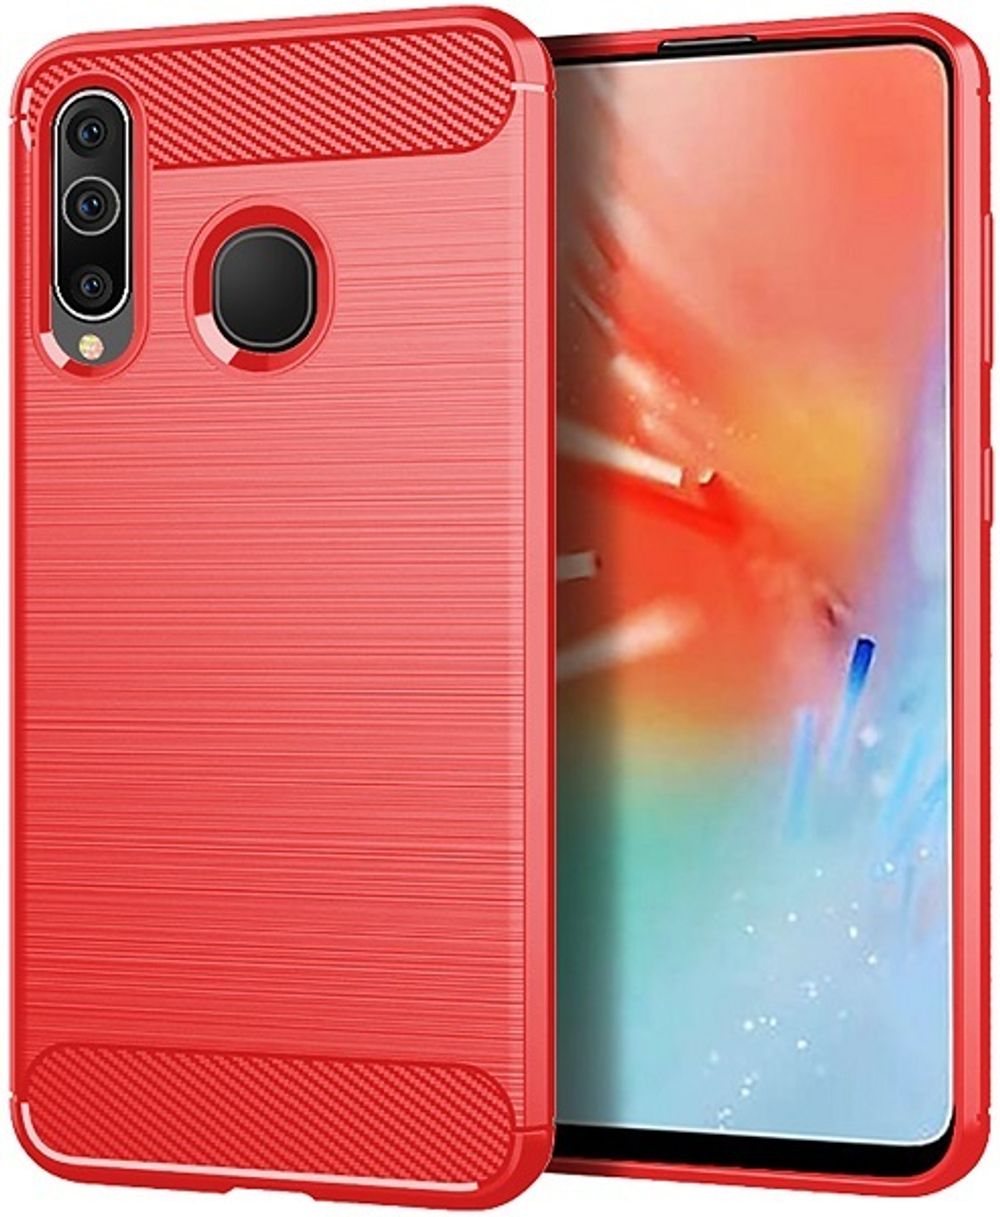 Чехол для Samsung Galaxy A60 (Galaxy M40) цвет Red (красный), серия Carbon от Caseport